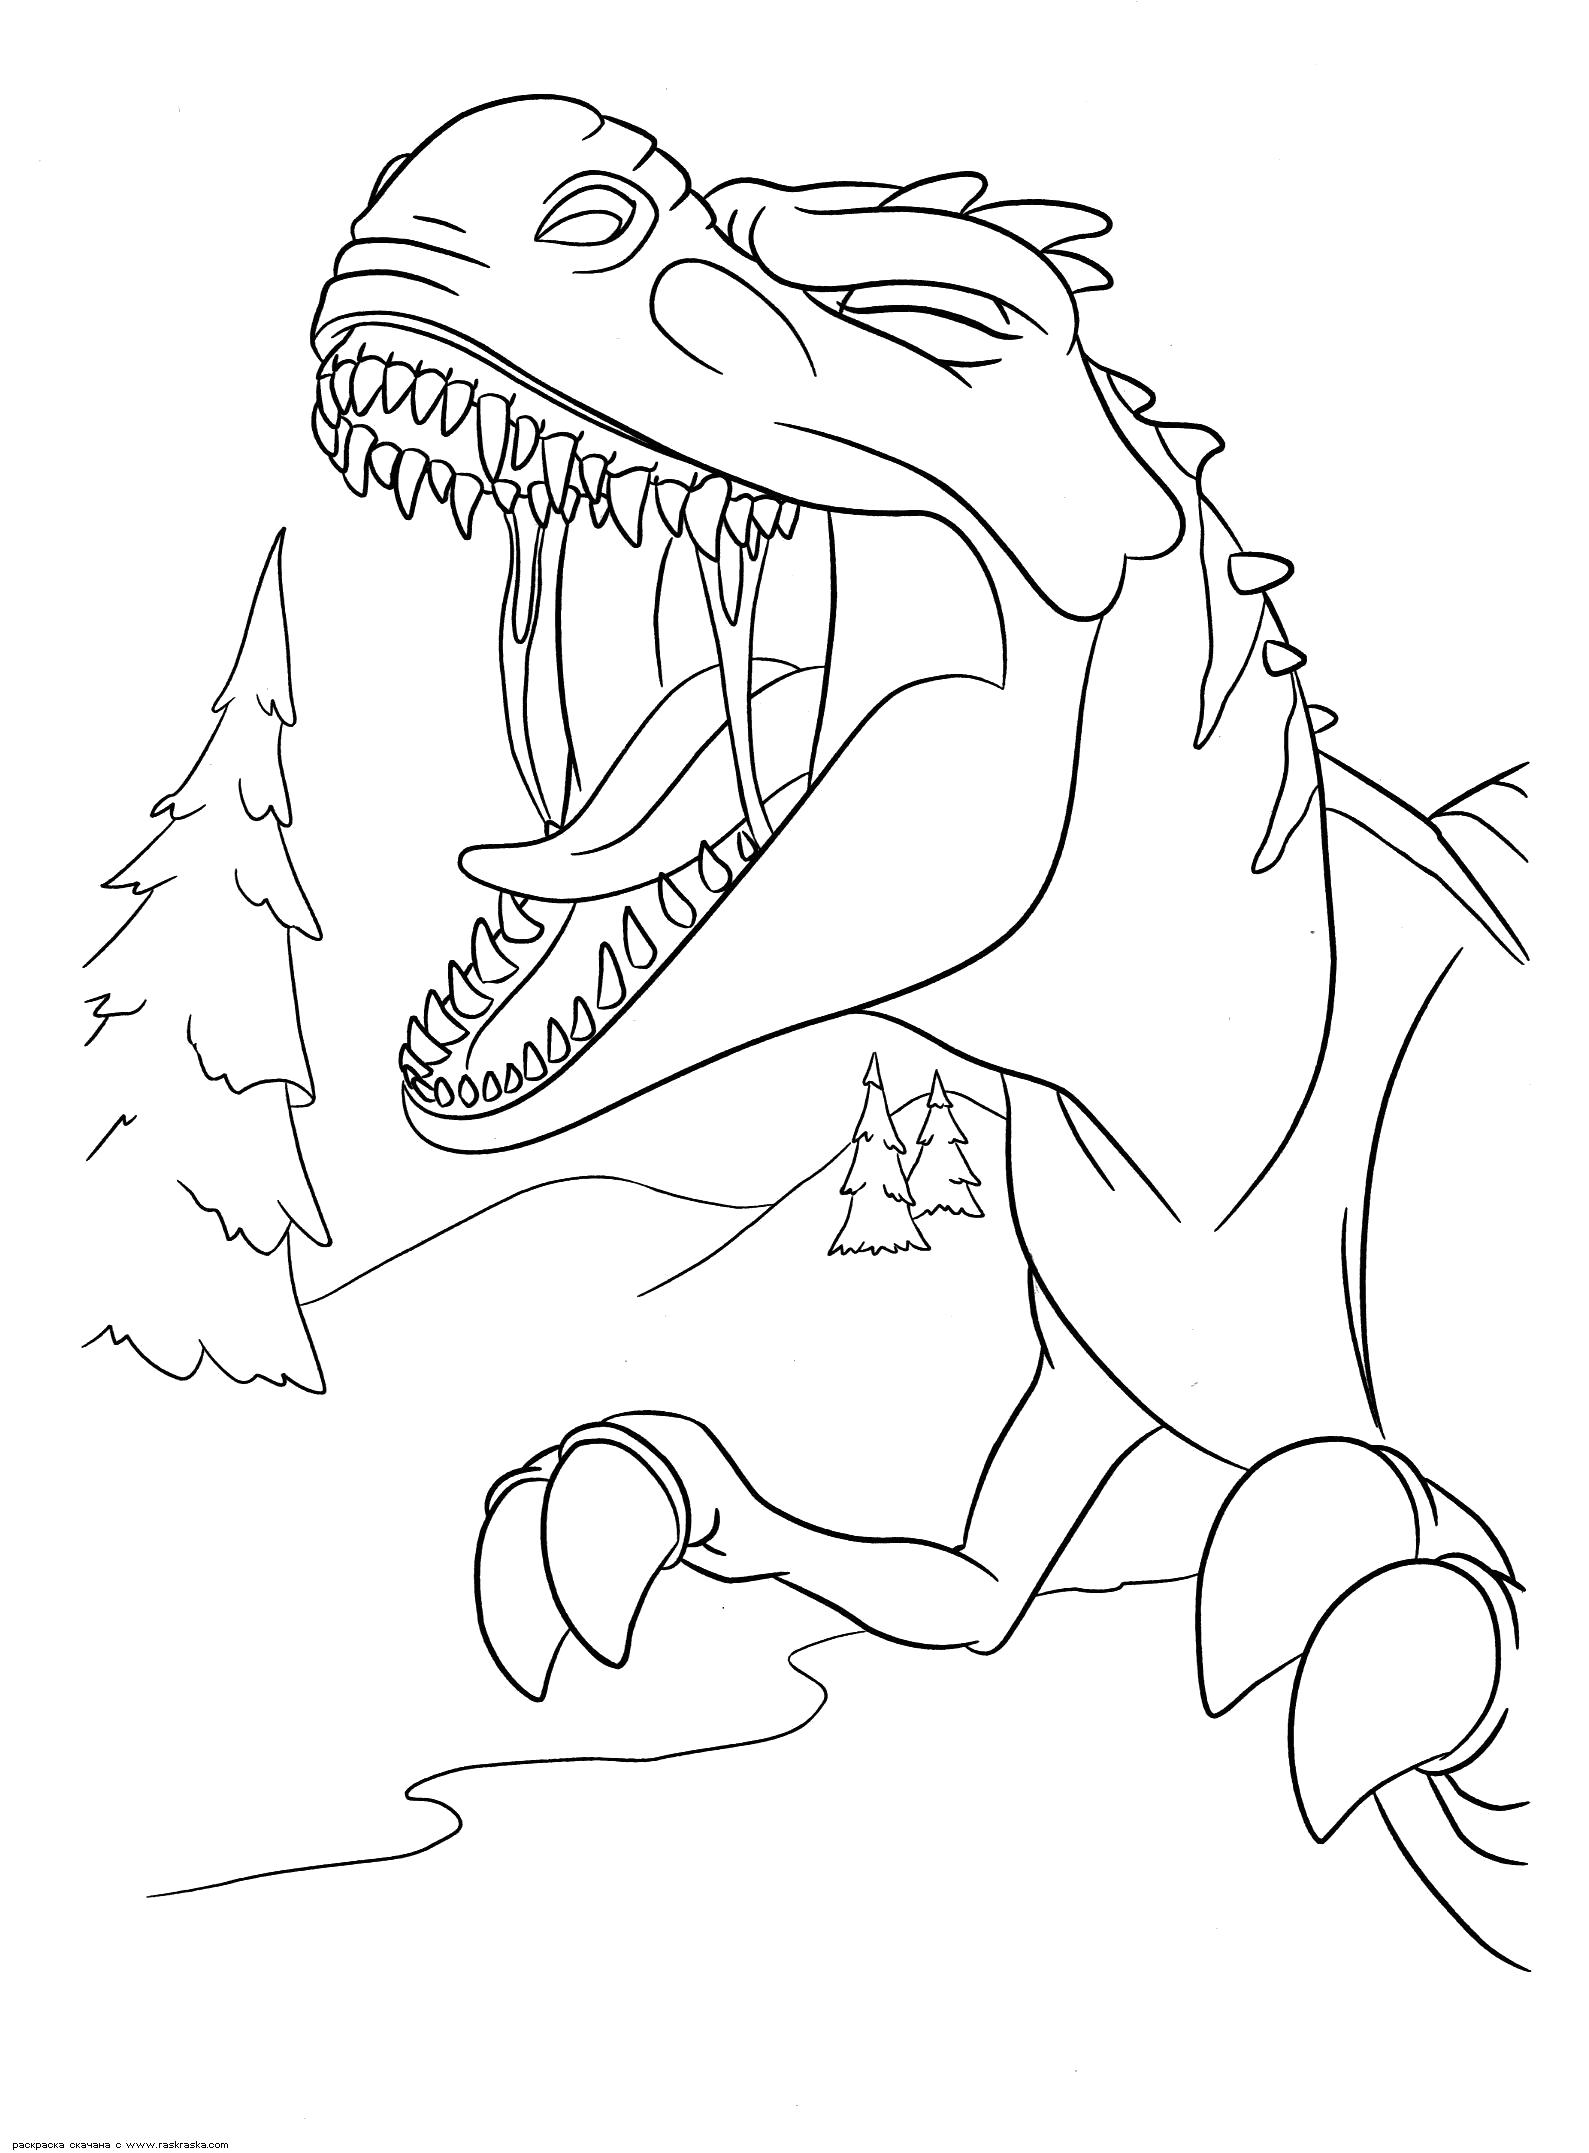 Раскраска Раскраска Громкий рёв мамаши. Раскраска Раскраска динозавра из мультика Ледниковый период 3: Эра динозавров. Разукрашка скачать бесплатно. динозавр